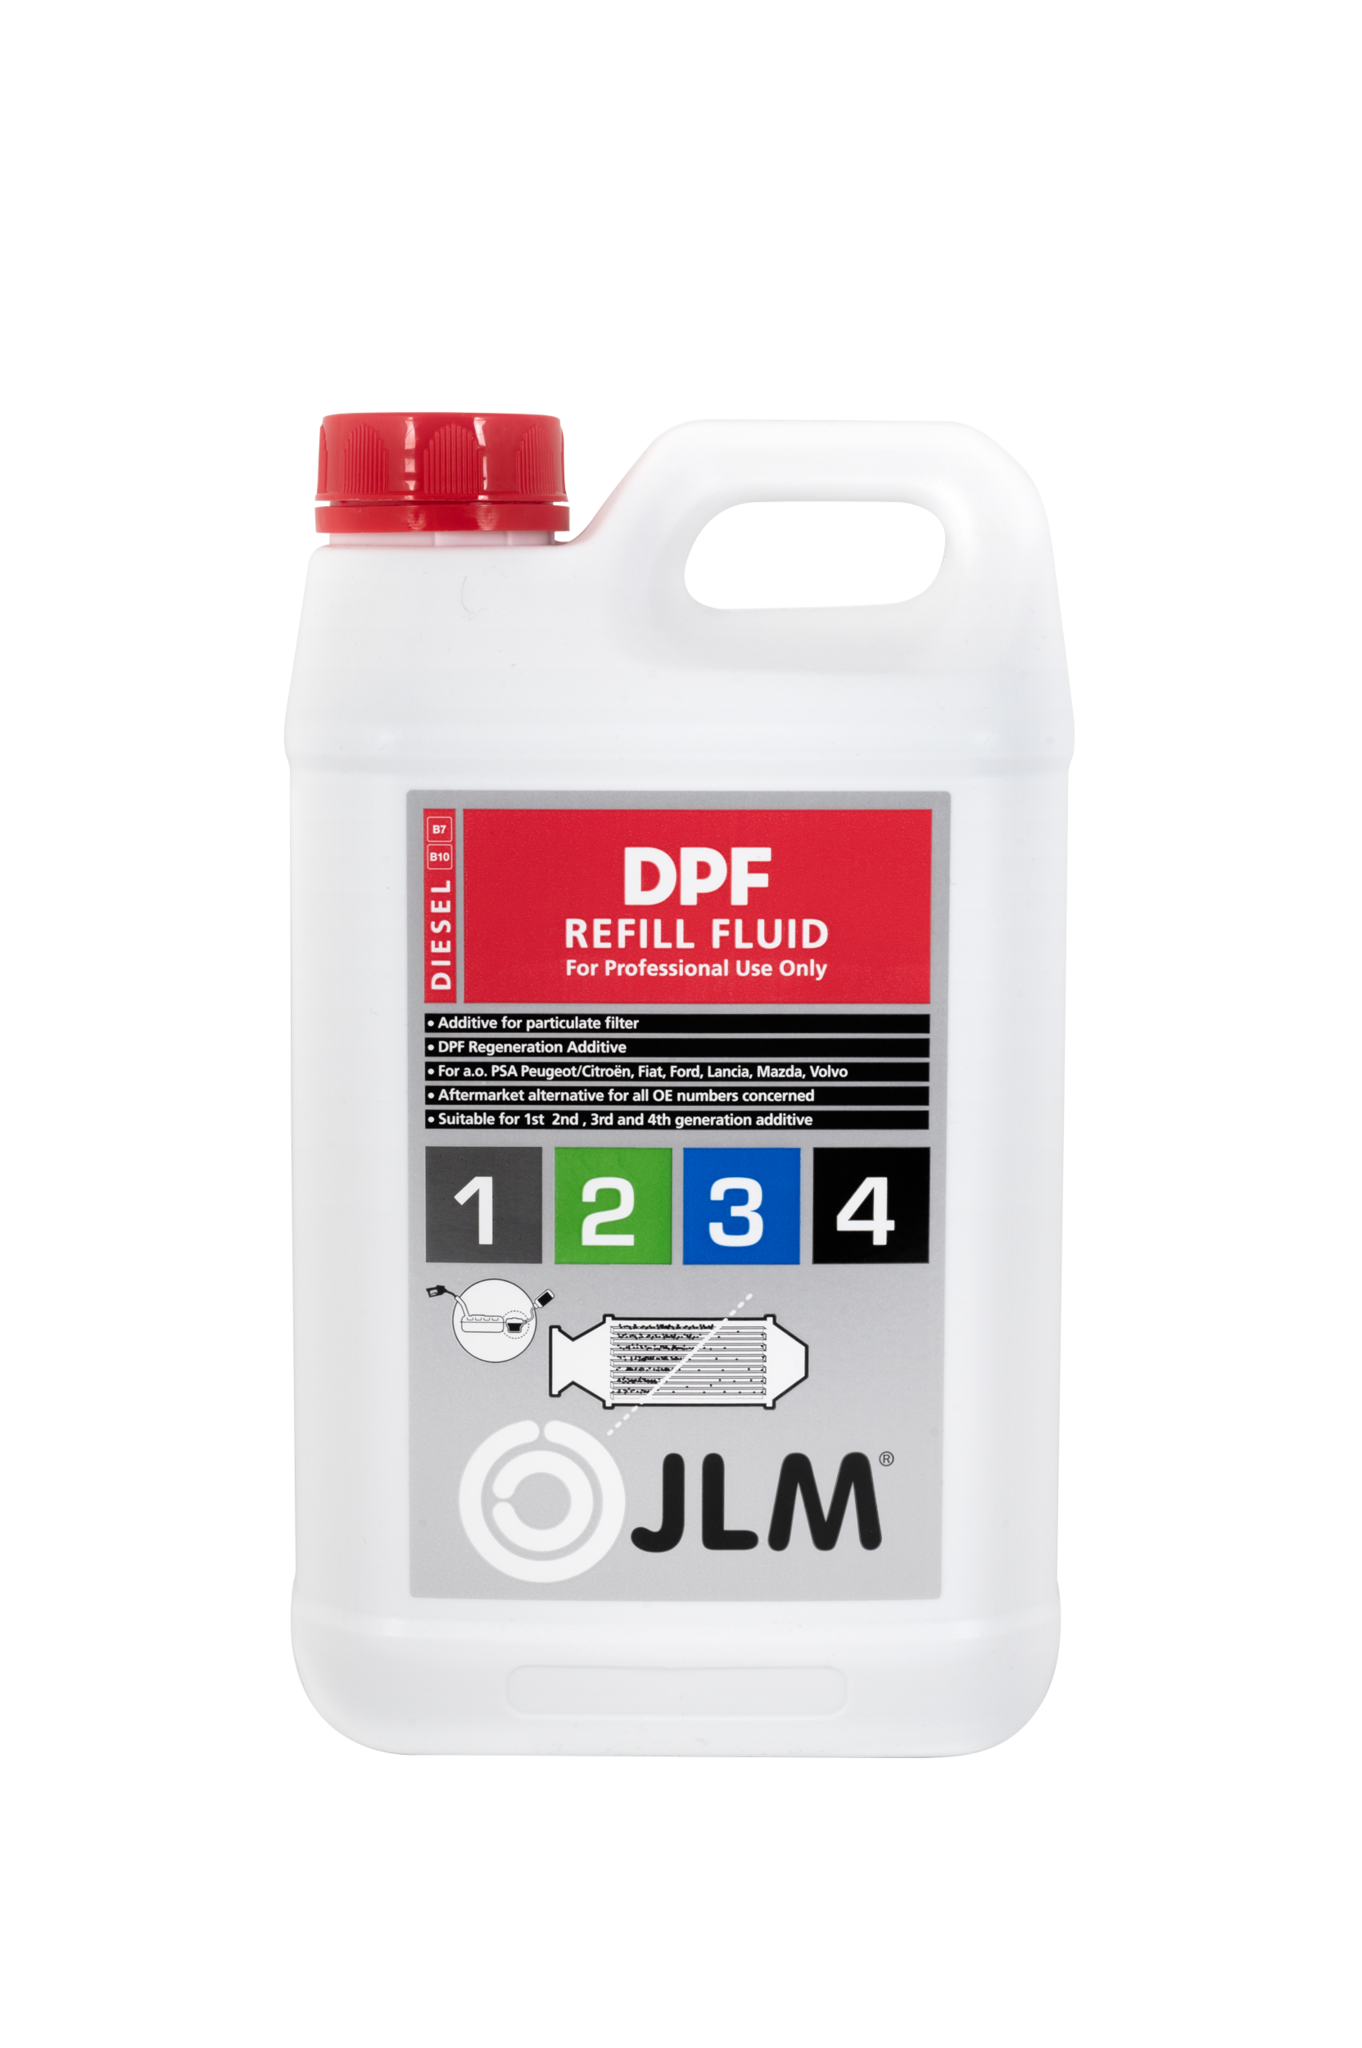 Diesel Rußpartikelfilter (DPF) Reinigungsspray / JLM DPF Spray